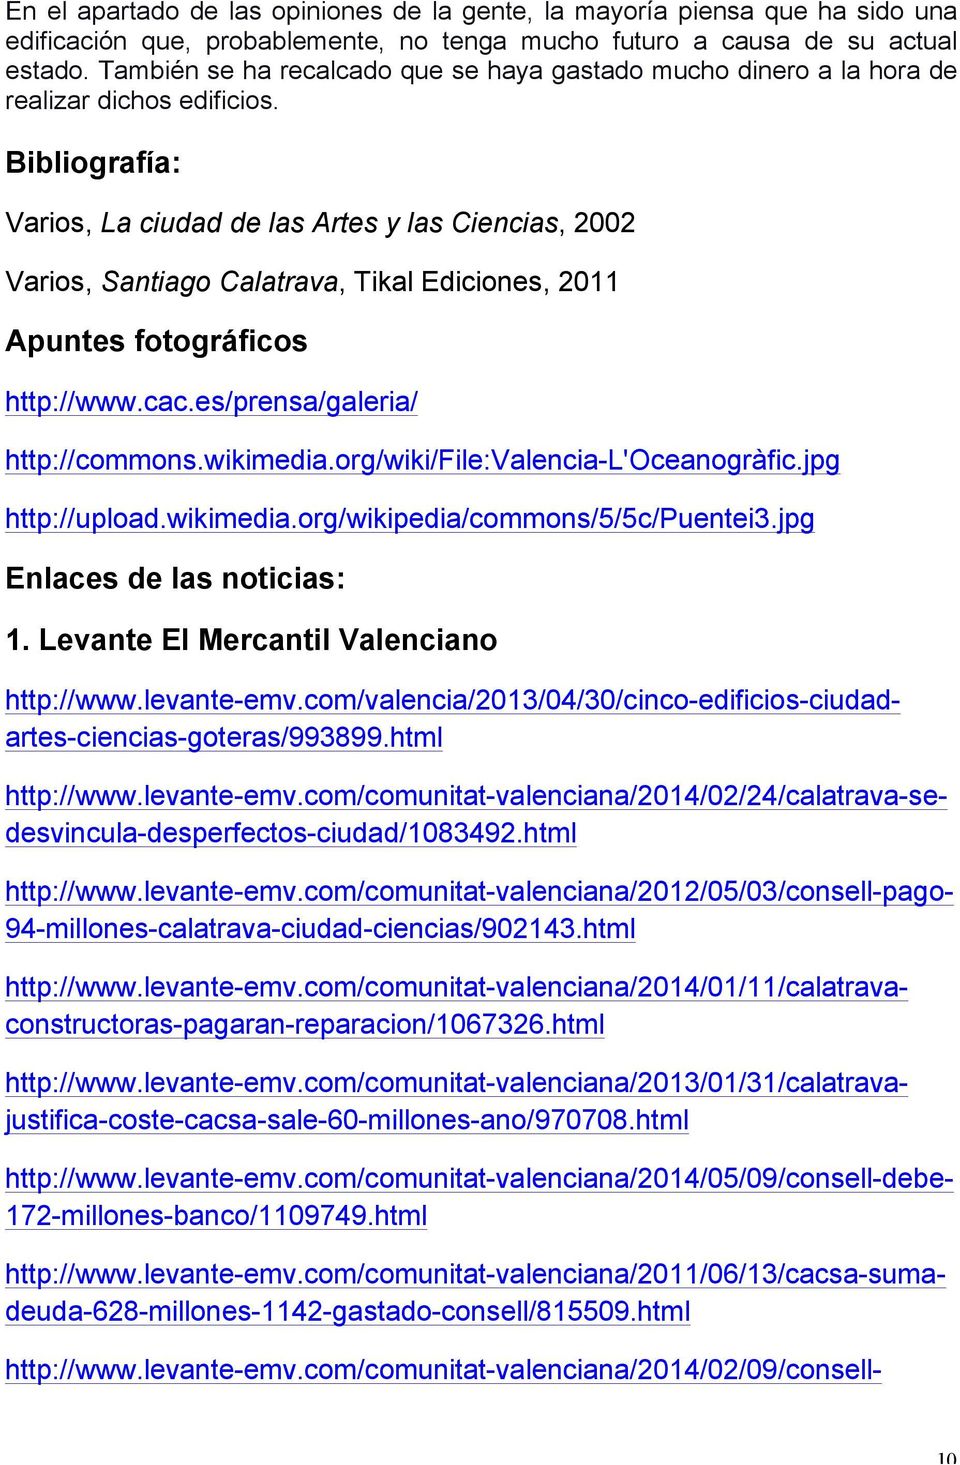 Bibliografía: Varios, La ciudad de las Artes y las Ciencias, 2002 Varios, Santiago Calatrava, Tikal Ediciones, 2011 Apuntes fotográficos http://www.cac.es/prensa/galeria/ http://commons.wikimedia.